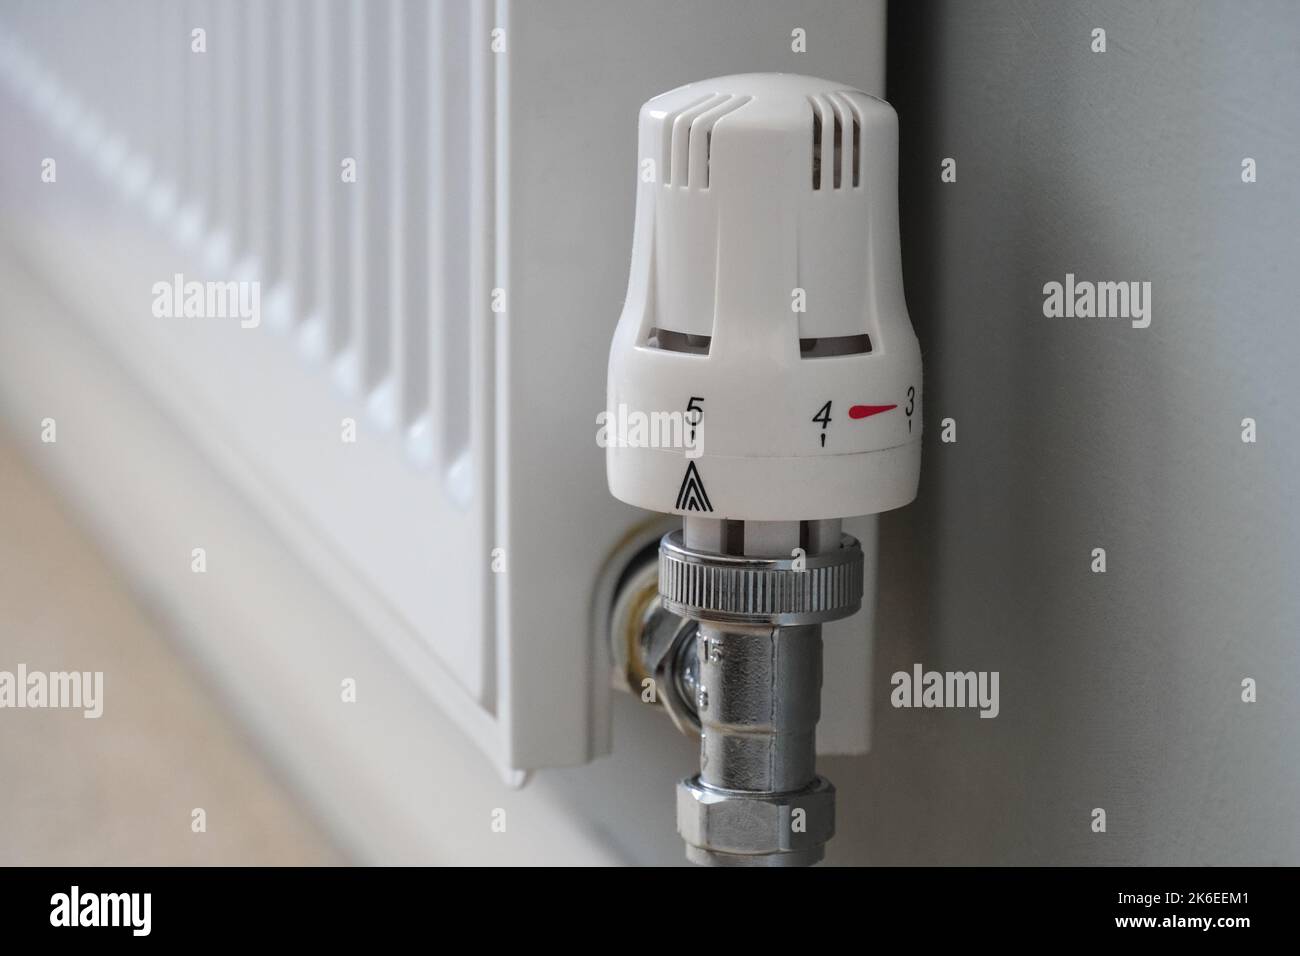 Gros plan du thermostat du radiateur complètement ouvert Banque D'Images